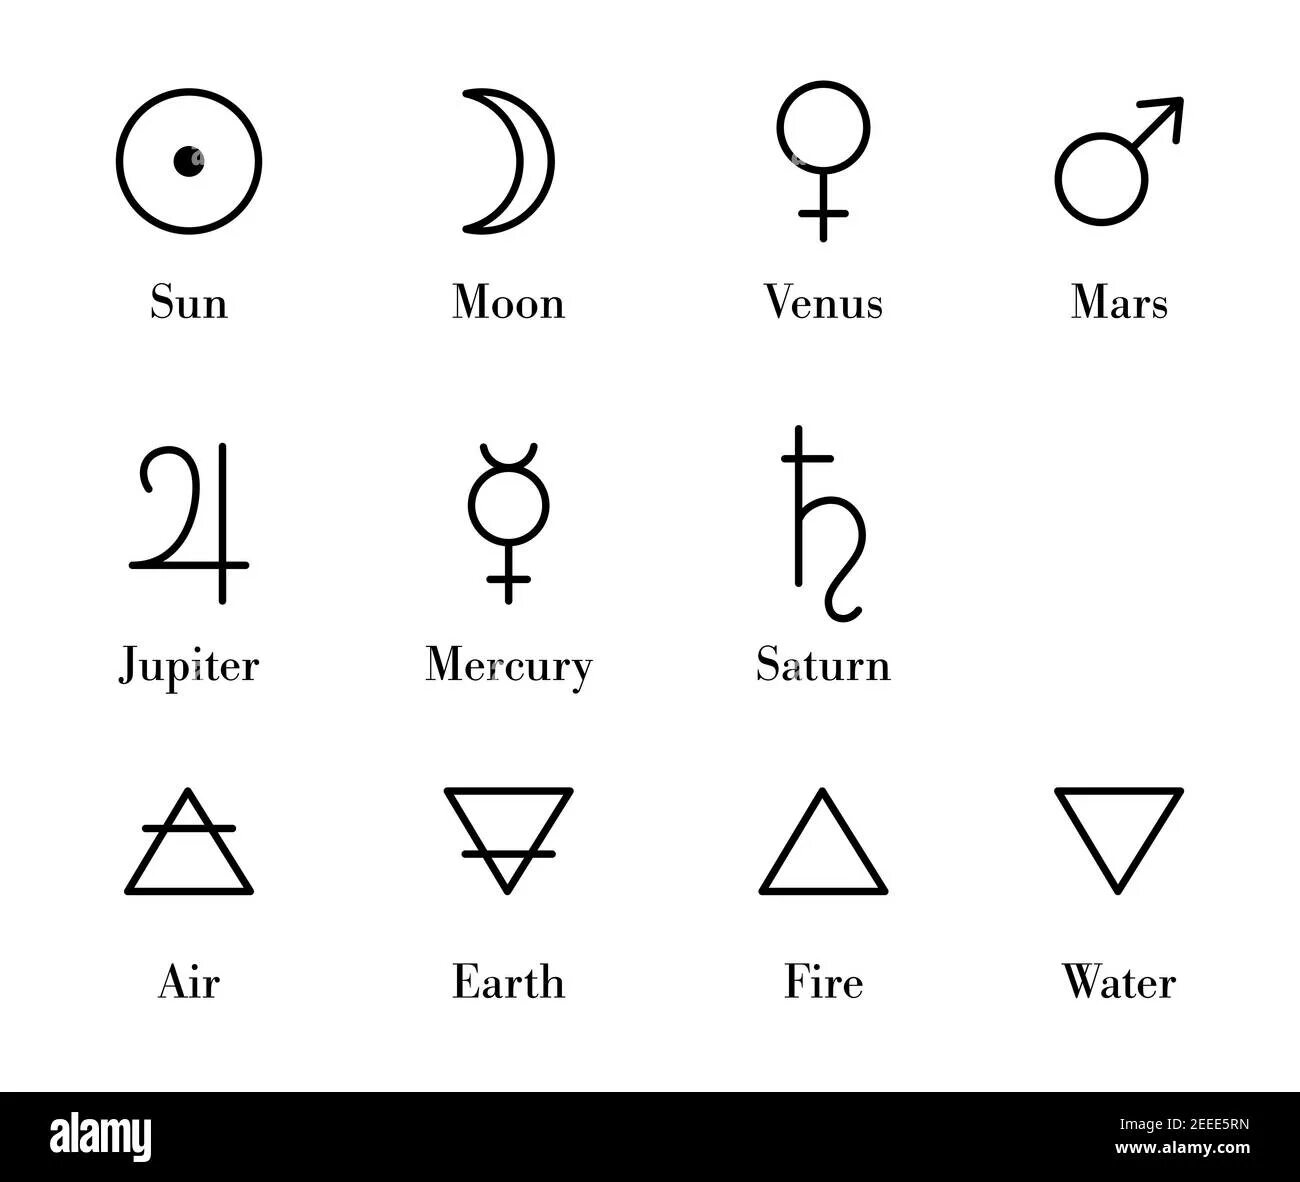 Алхимические знаки планет. Сатурн алхимический знак. Сатурн в алхимии. Алхимия символы.